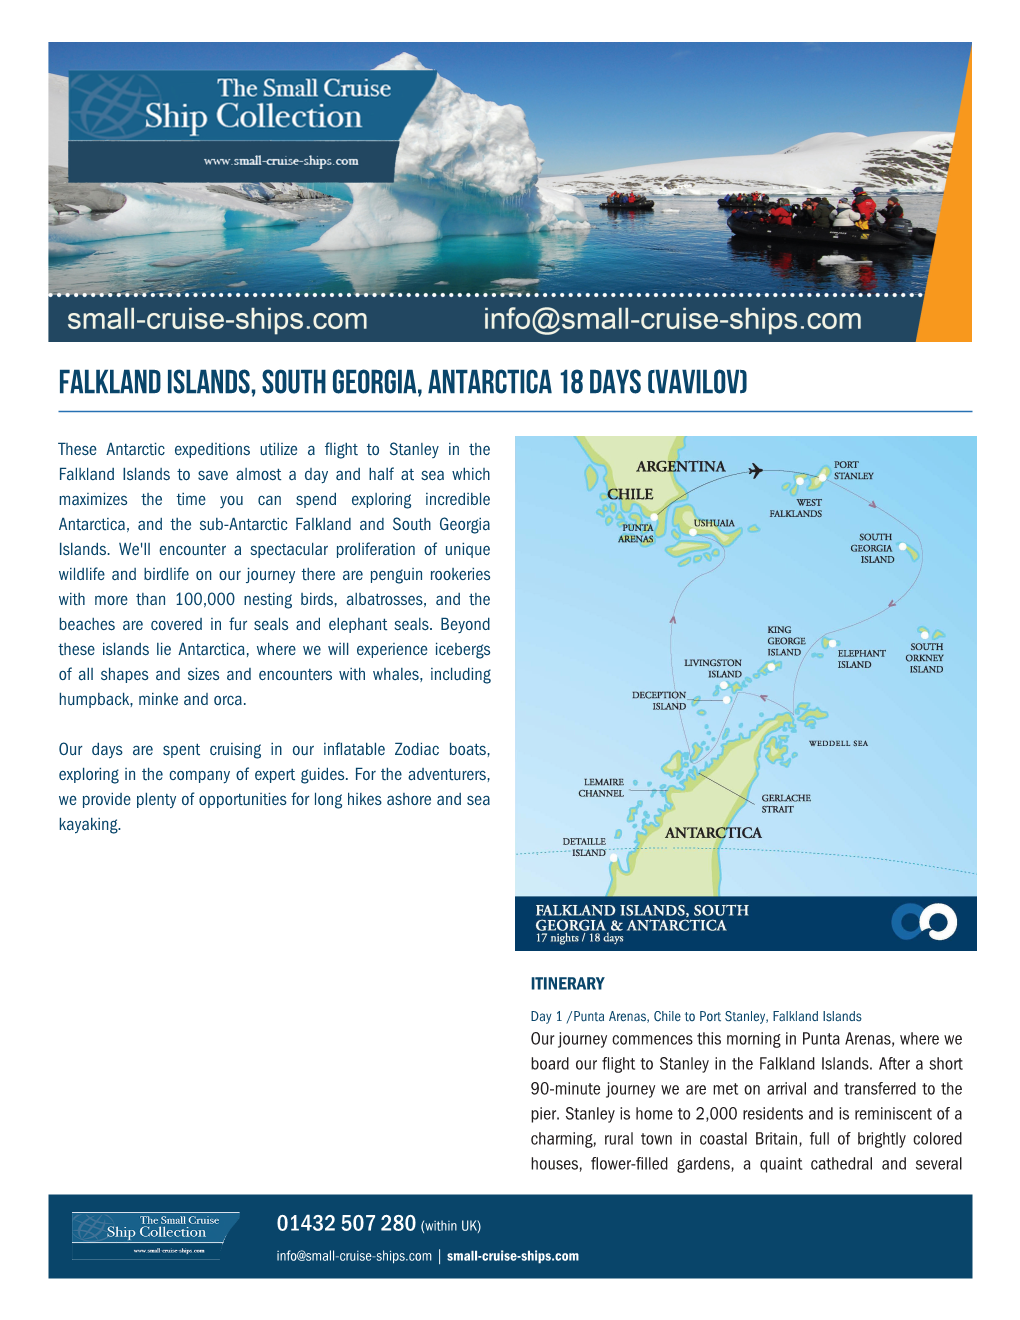 Falkland Islands, South Georgia, Antarctica 18 Days (Vavilov)